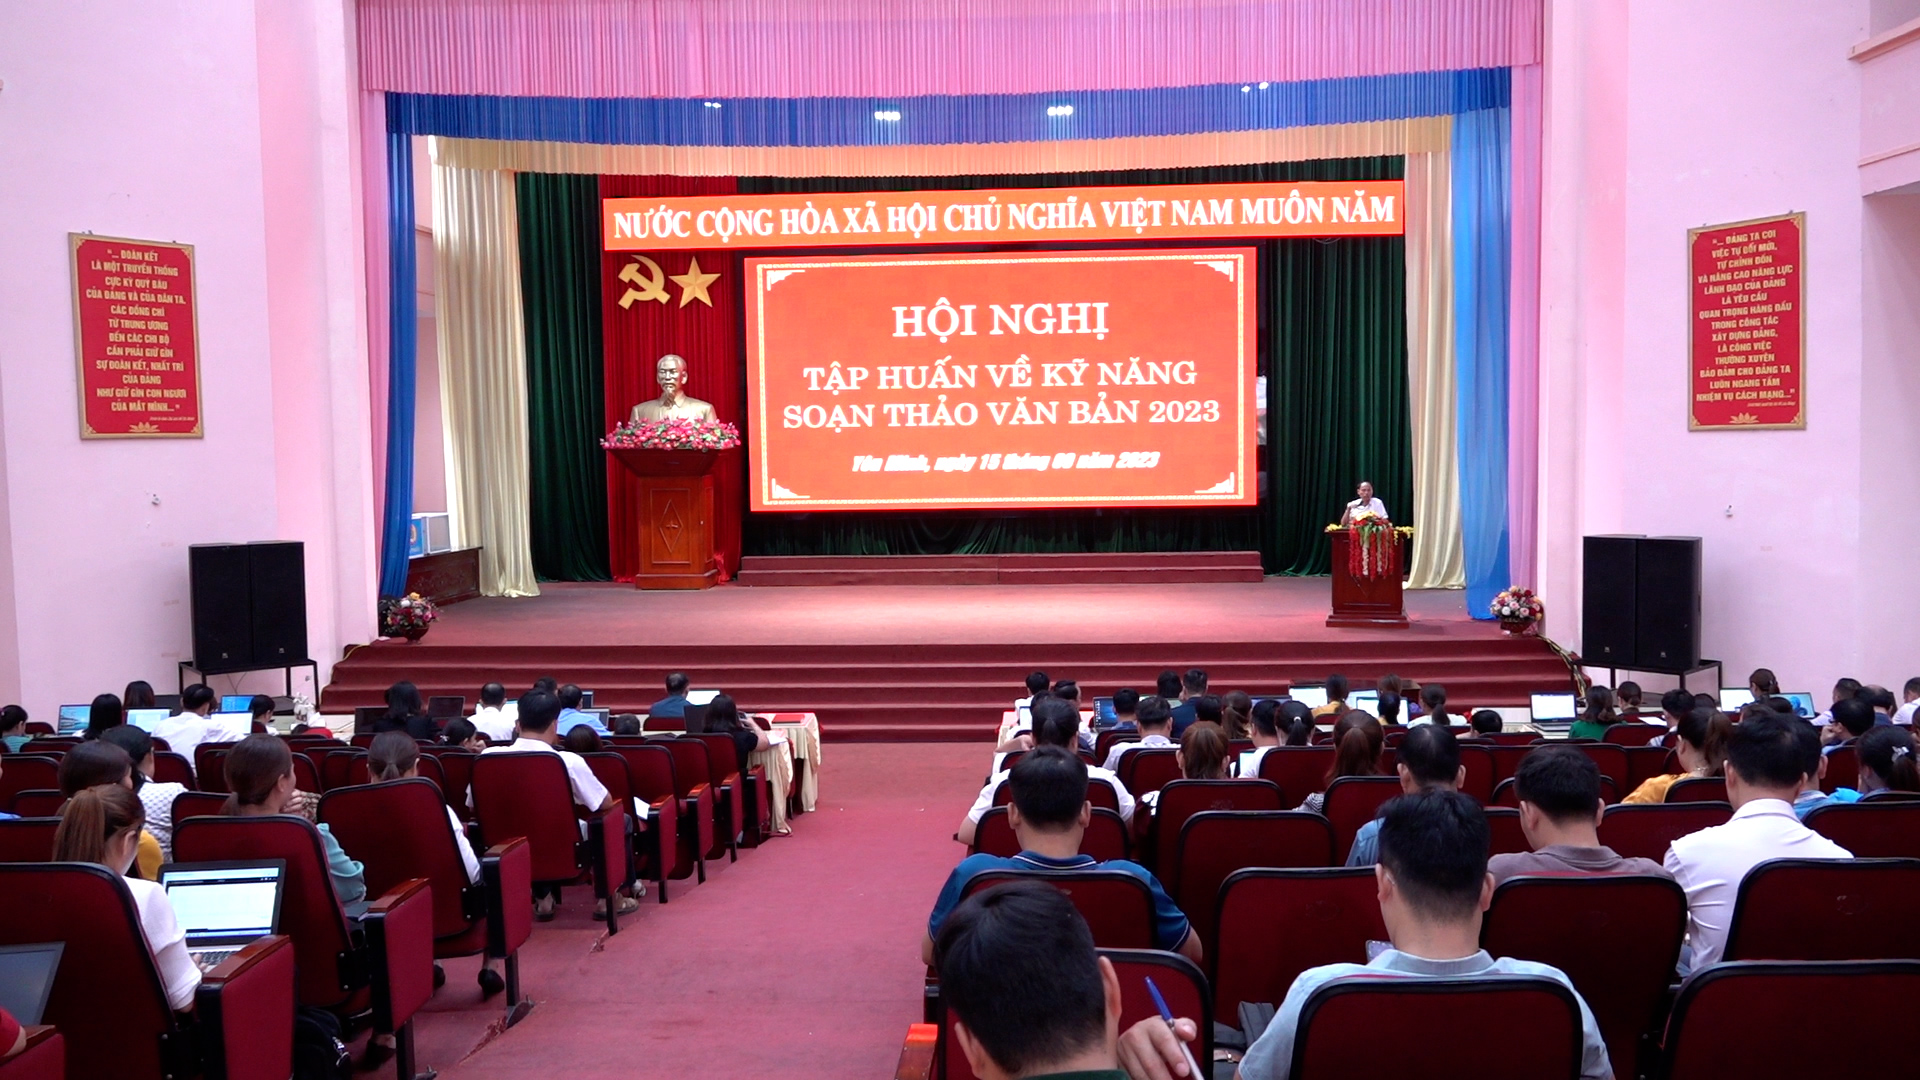 Yên Minh tổ chức tập huấn kỹ năng soạn thảo văn bản năm 2023